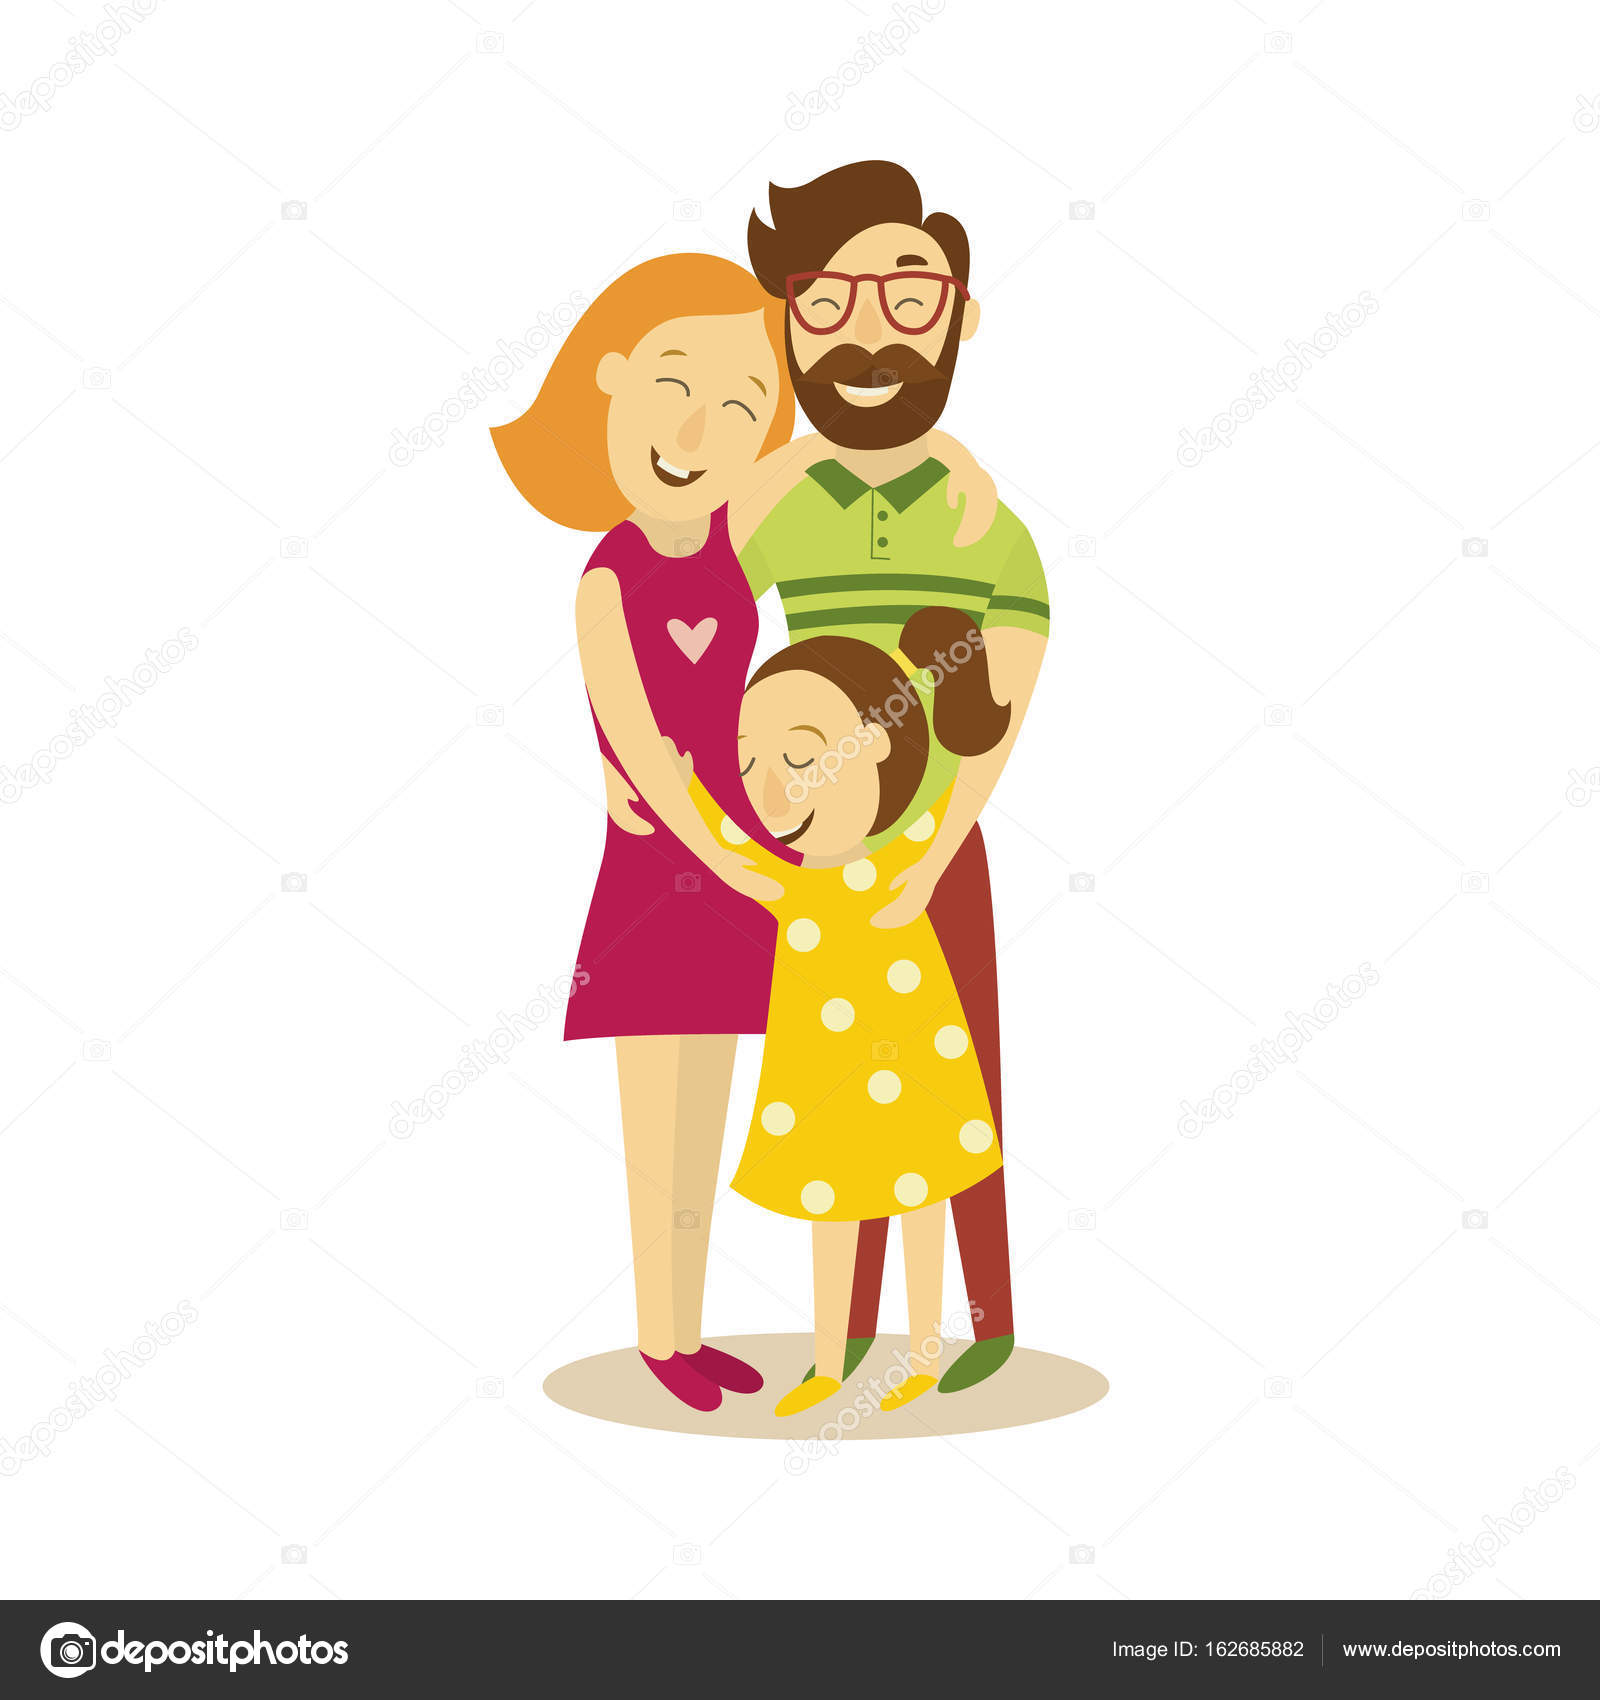 Маму папу обними. Объятия семья вектор. Семья обнимается иллюстрация. Отец обнимает ребенка иллюстрации. Семья обнимается на белом фоне.